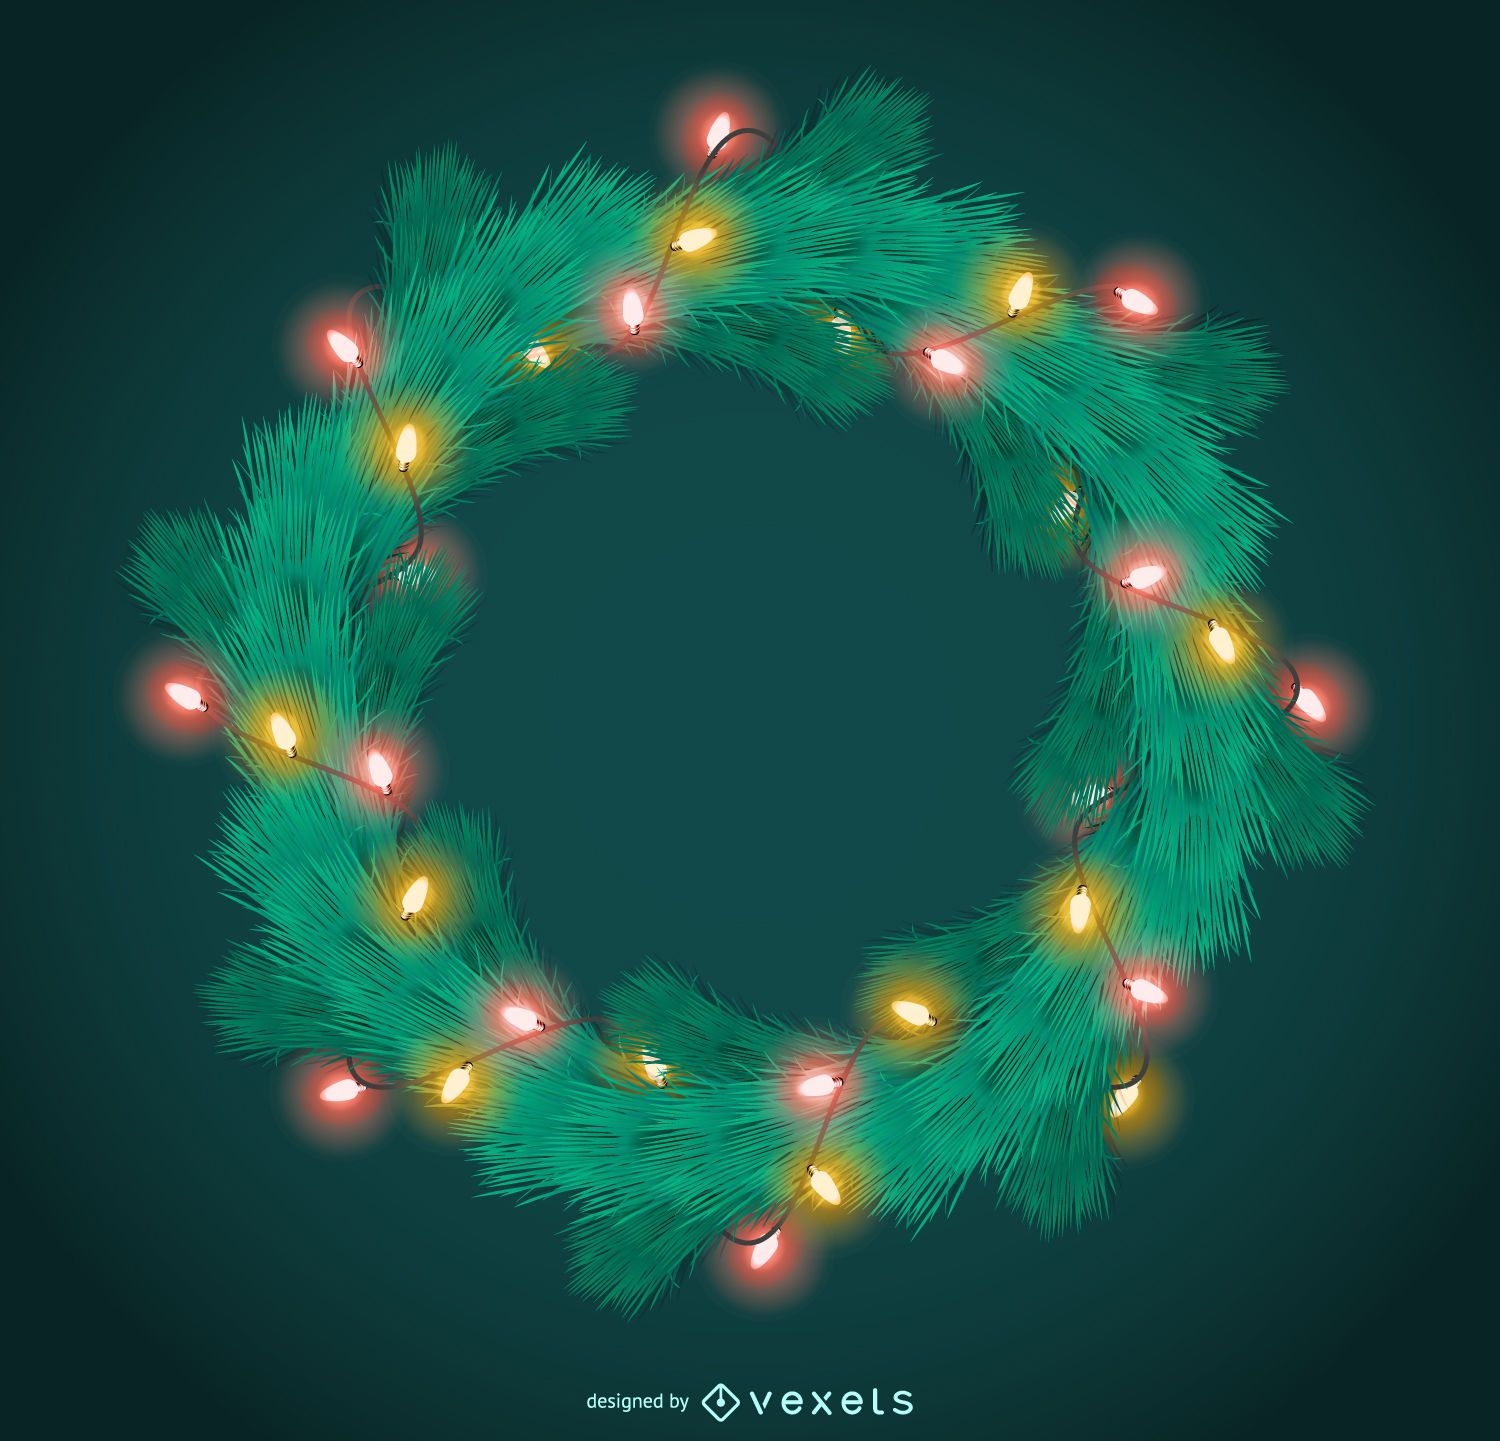 Christmas garland with lights frame